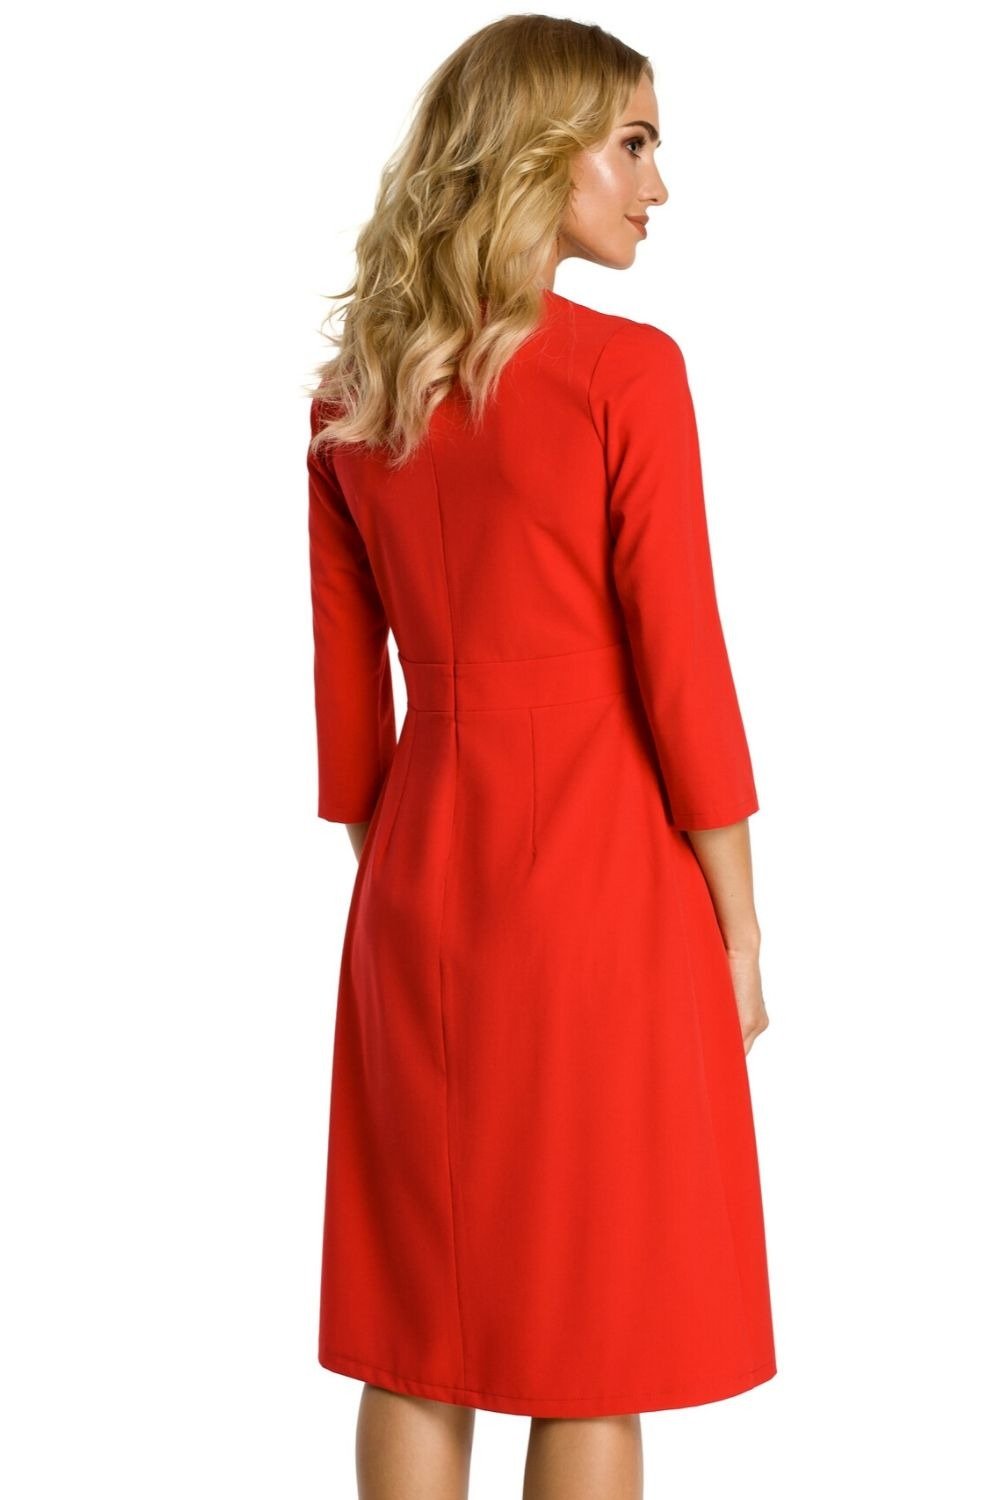 Opis: Sukienka elegancka rozkloszowana z zakładkami modelujące szwy czerwona.